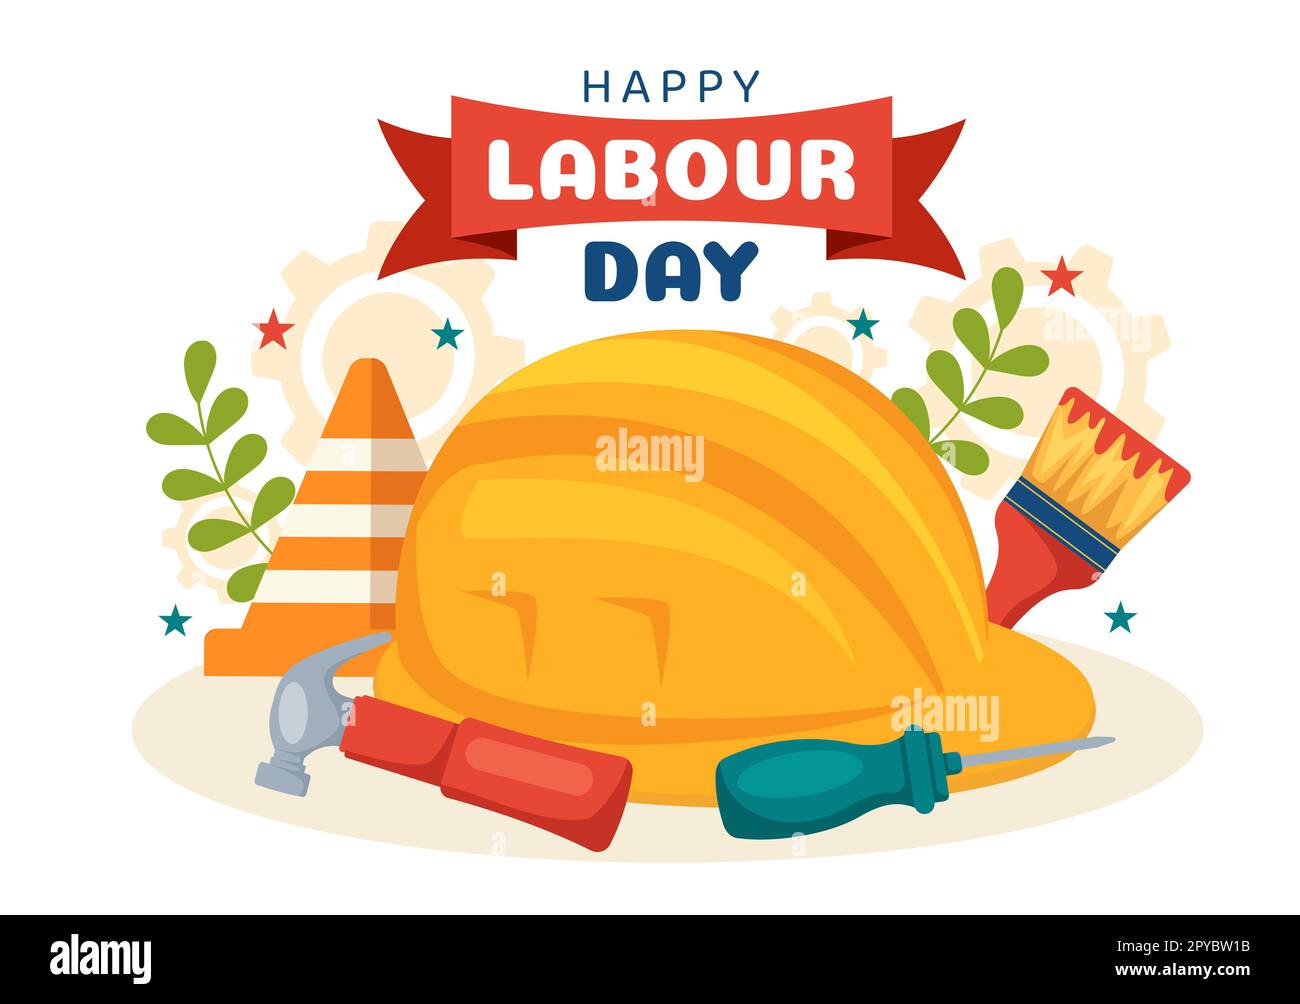 Happy Labor Day am 1. Mai Illustration mit verschiedenen Berufen und vielen Dank an alle Arbeiter für Ihre harte Arbeit an handgezeichneten Flat Cartoon Vorlagen Stockfoto